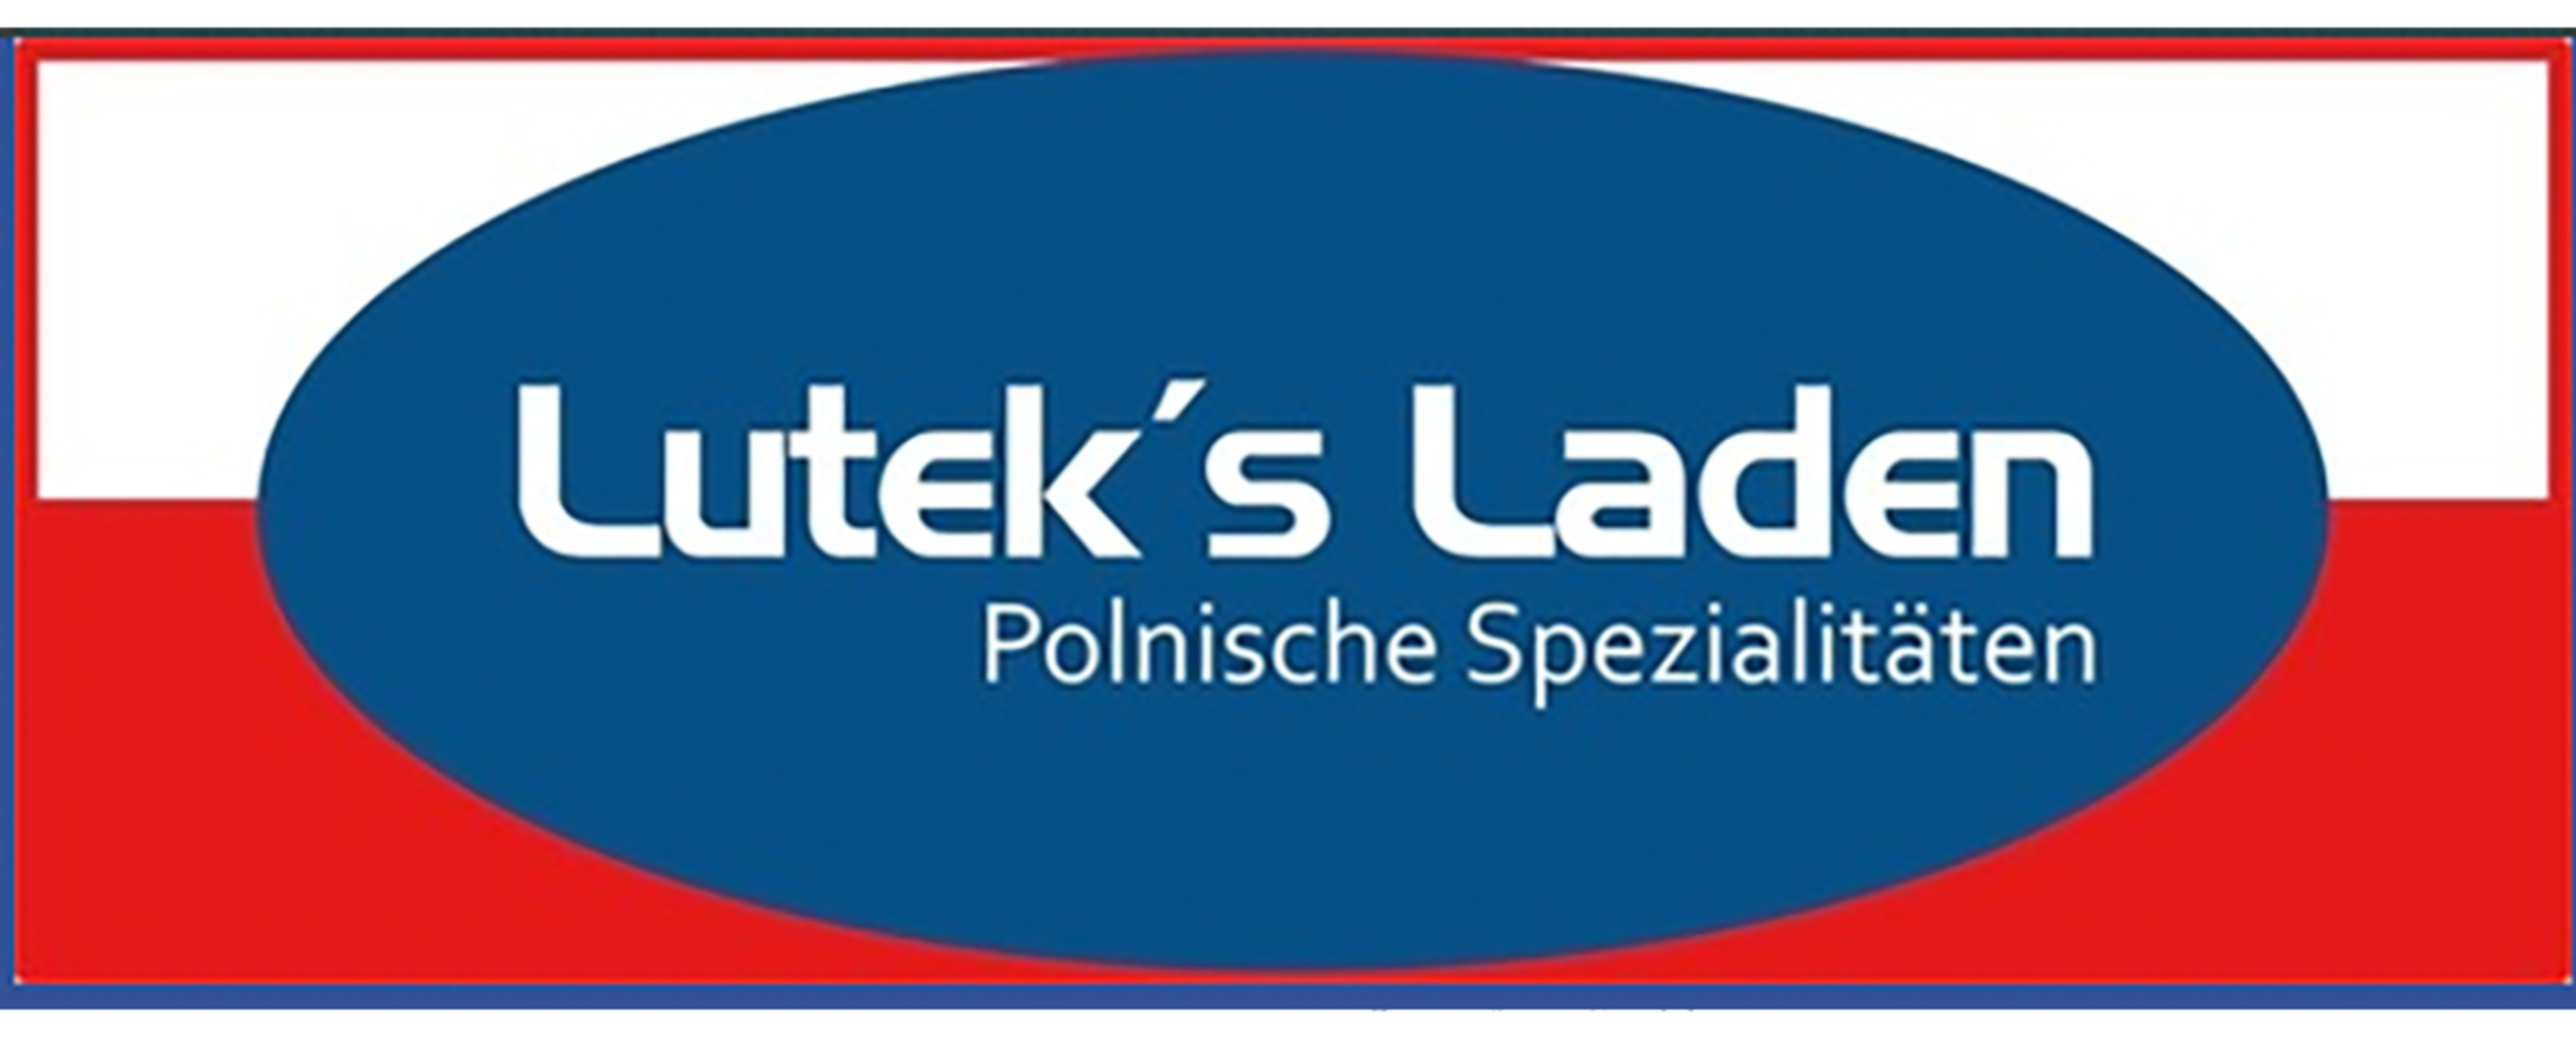 Der polnische Lebensmittelgeschäft Lutek's Laden